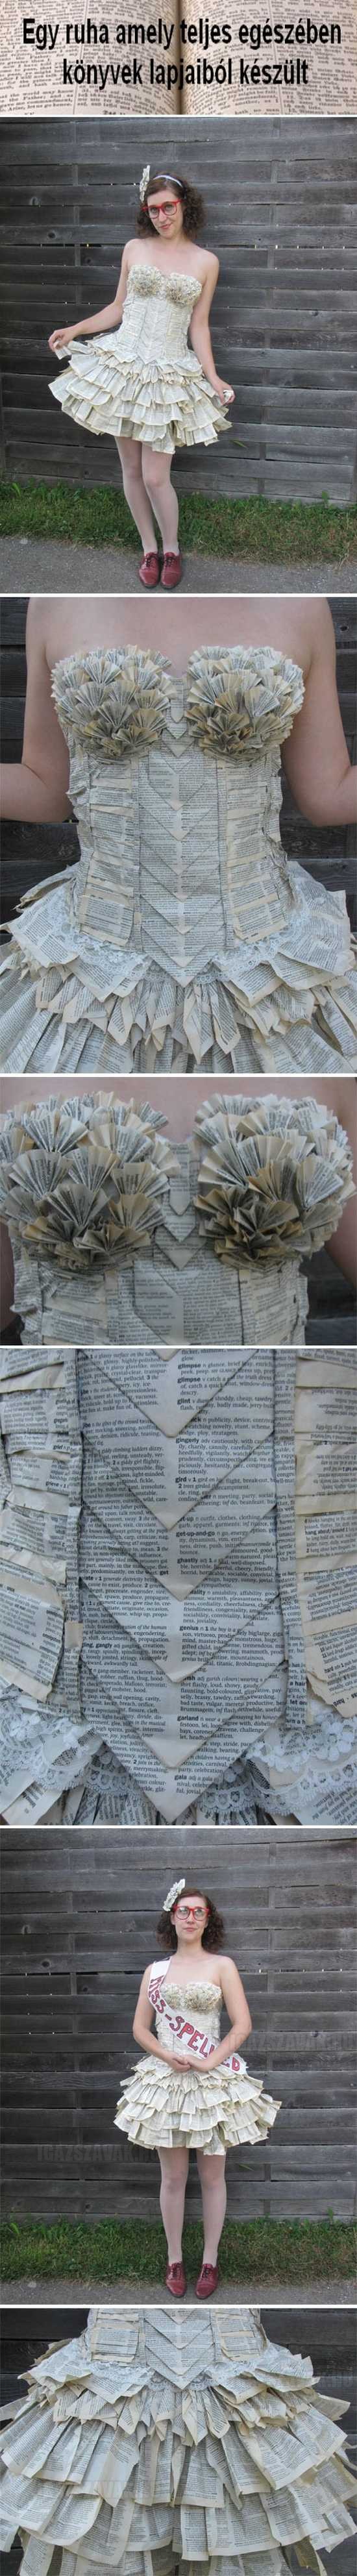 Egy ruha amely teljes egészében könyvekből készült